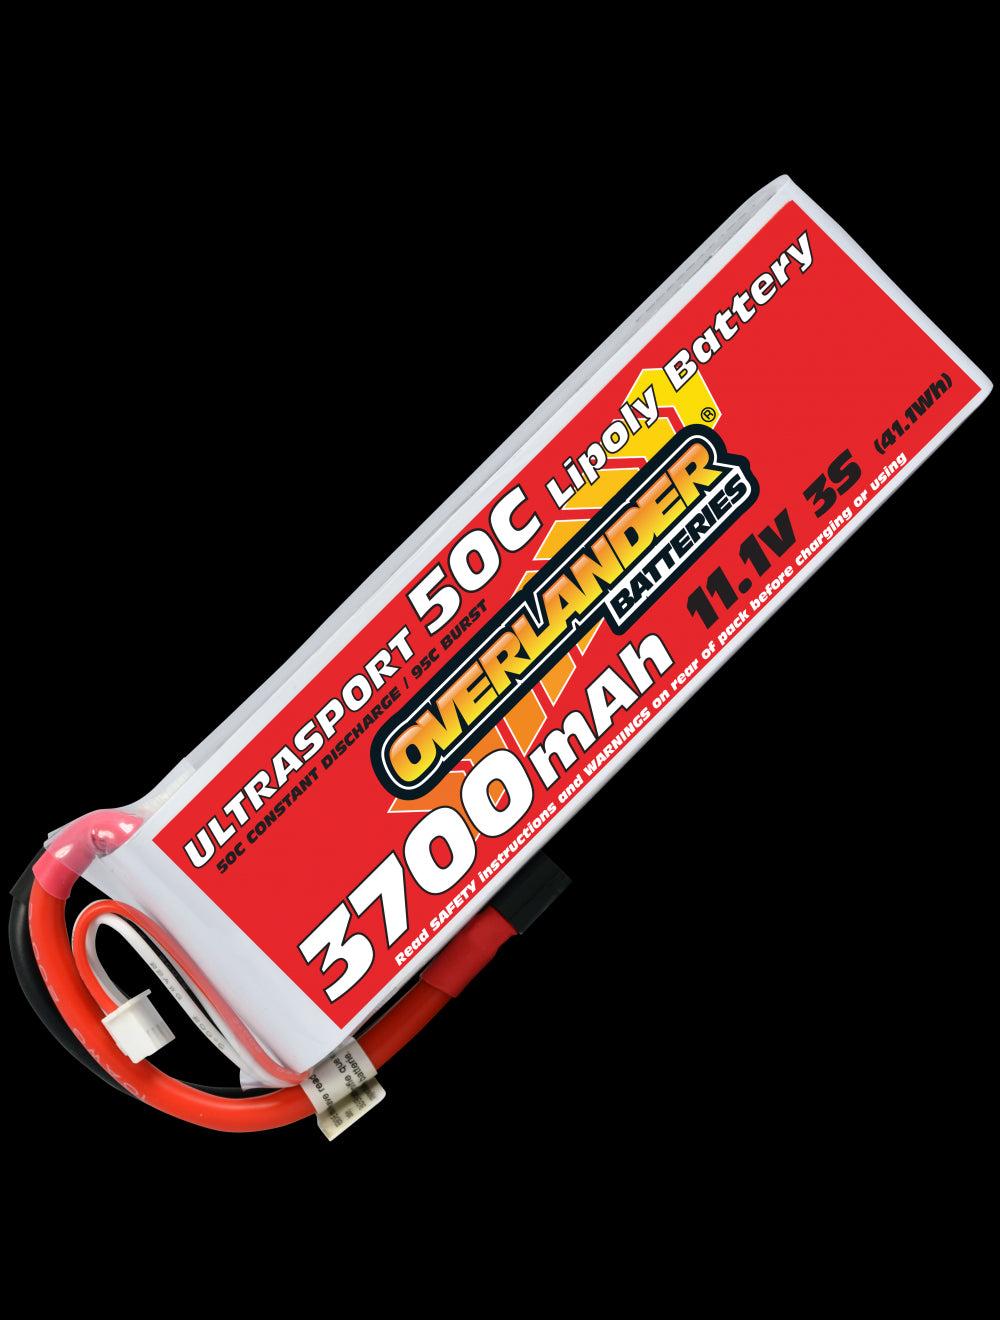 Overlander 3700mAh 11.1V 3S 50C Ultrasport LiPo Battery - XT90 Connector 2628